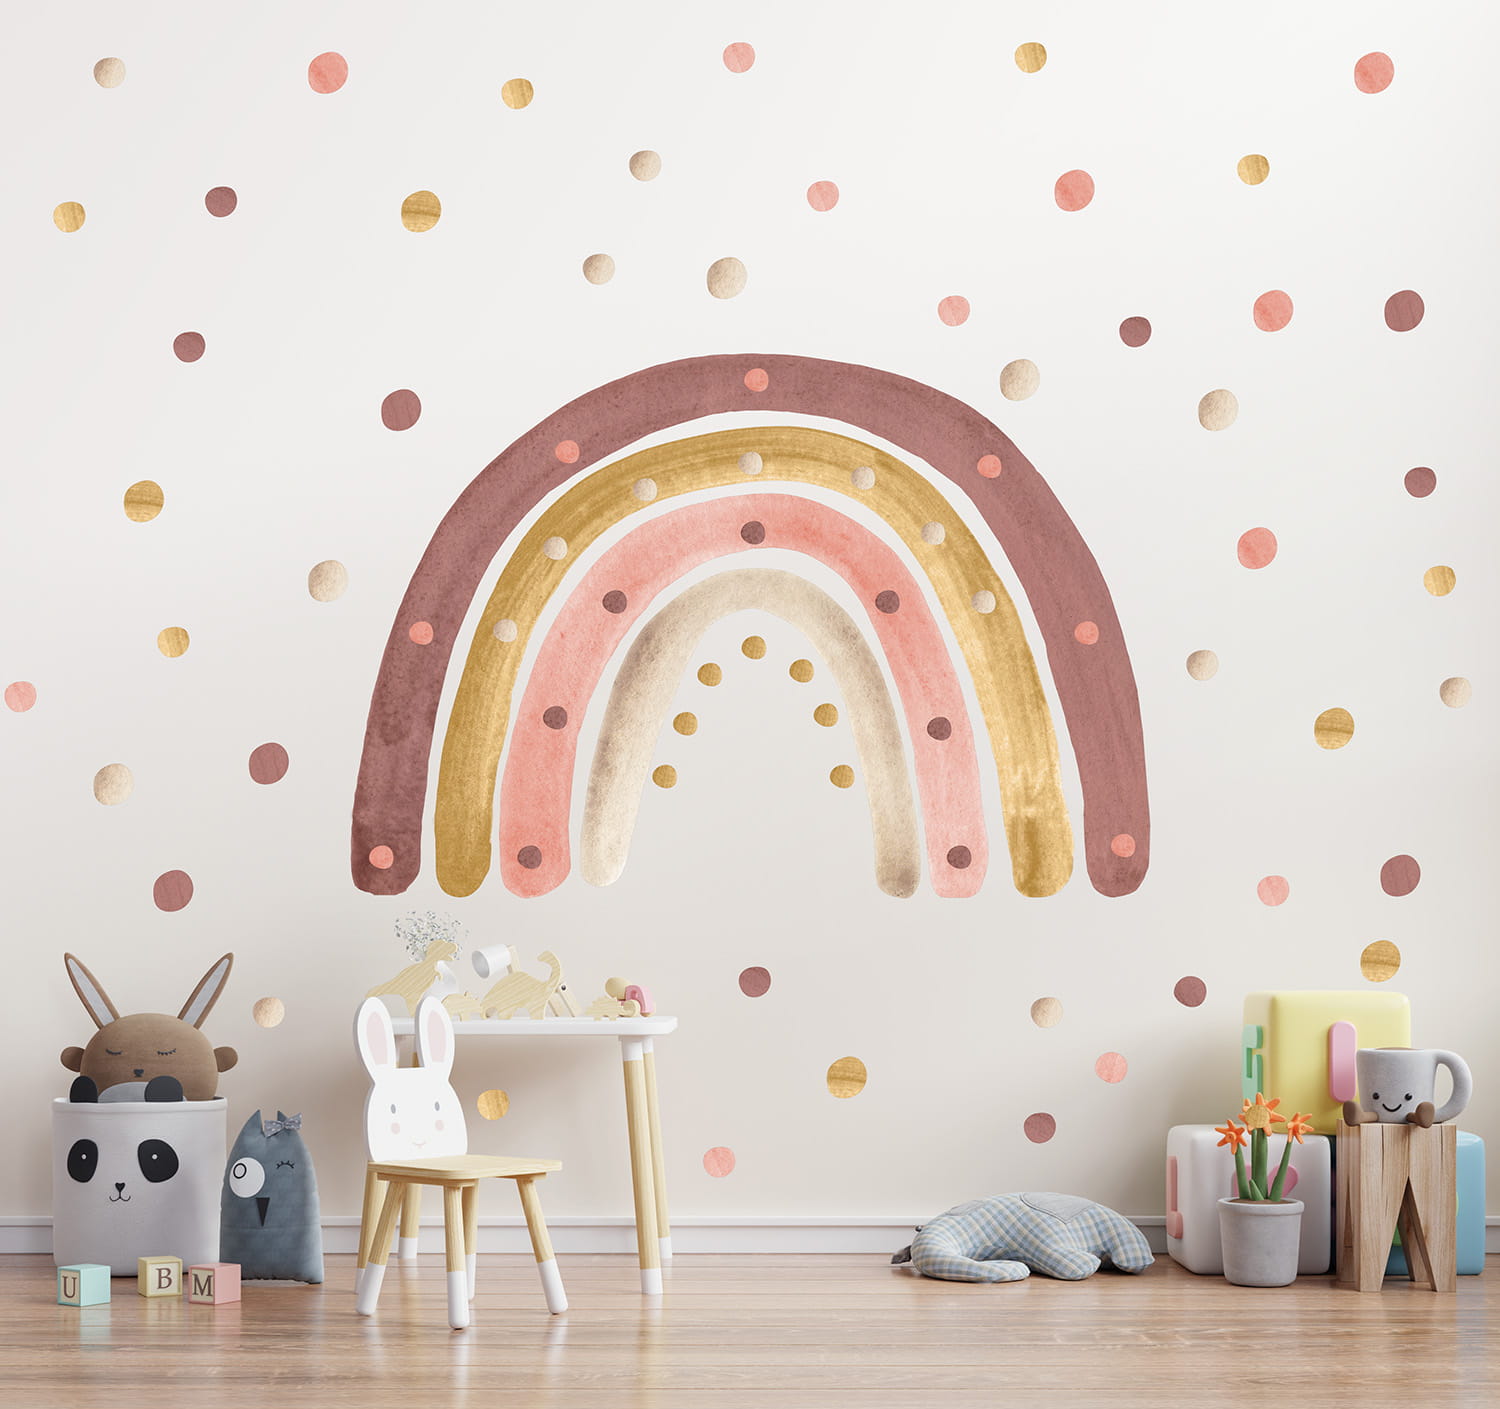 Babylove, väggklistermärke regnbåge med prickar, dusty pink Dusty pink regnbåge med prickar på väggen i ett barnrum